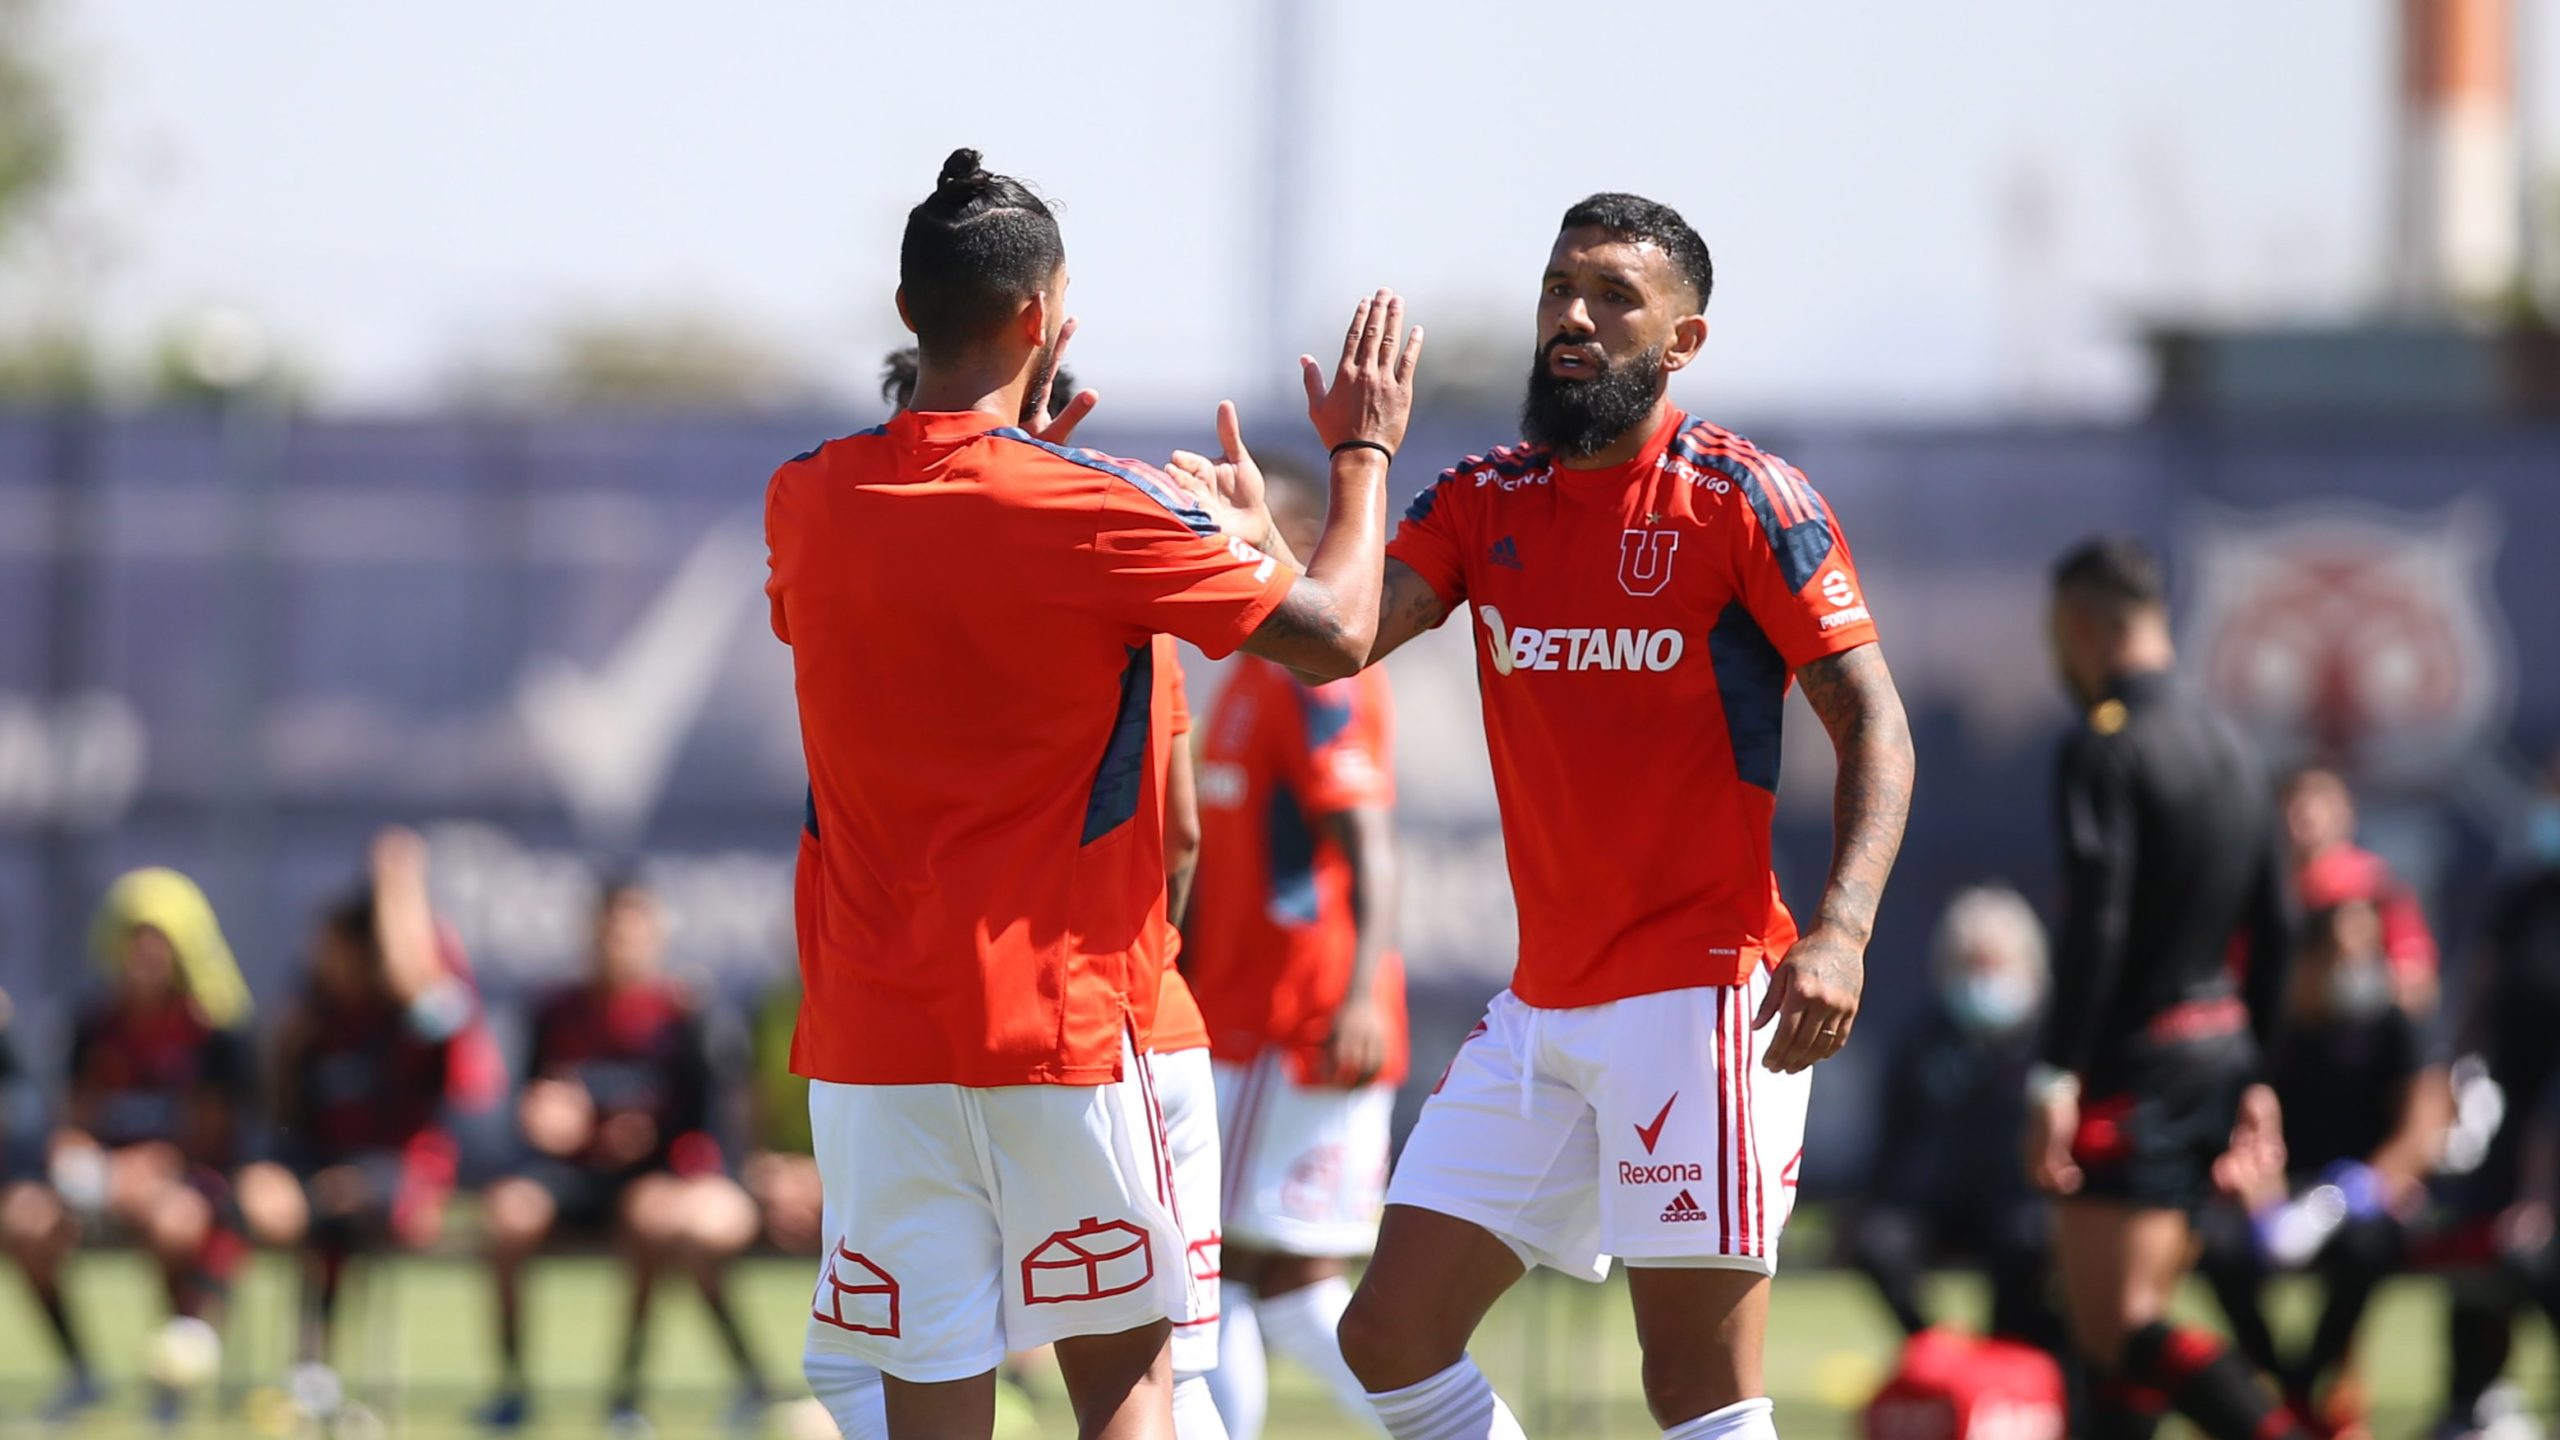 Universidad de Chile sumó un triunfo y un empate en amistosos con Ñublense